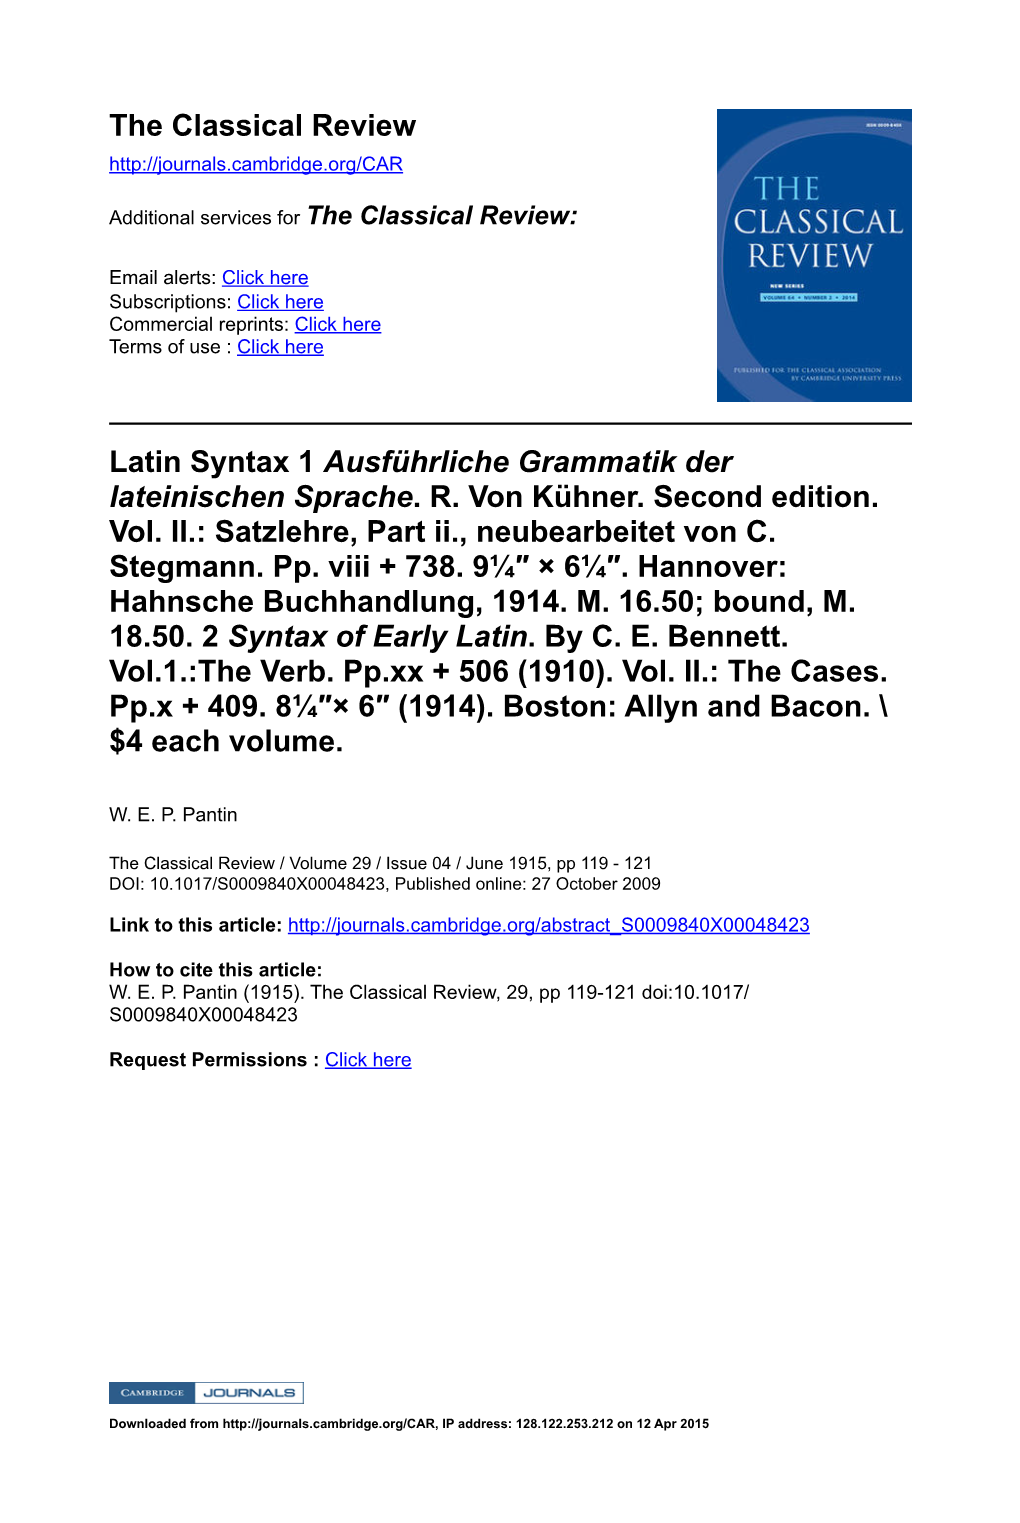 Latin Syntax 1 Ausführliche Grammatik Der Lateinischen Sprache. R. Von Kühner. Second Edition. Vol. II.: Satzlehre, Part Ii., Neubearbeitet Von C